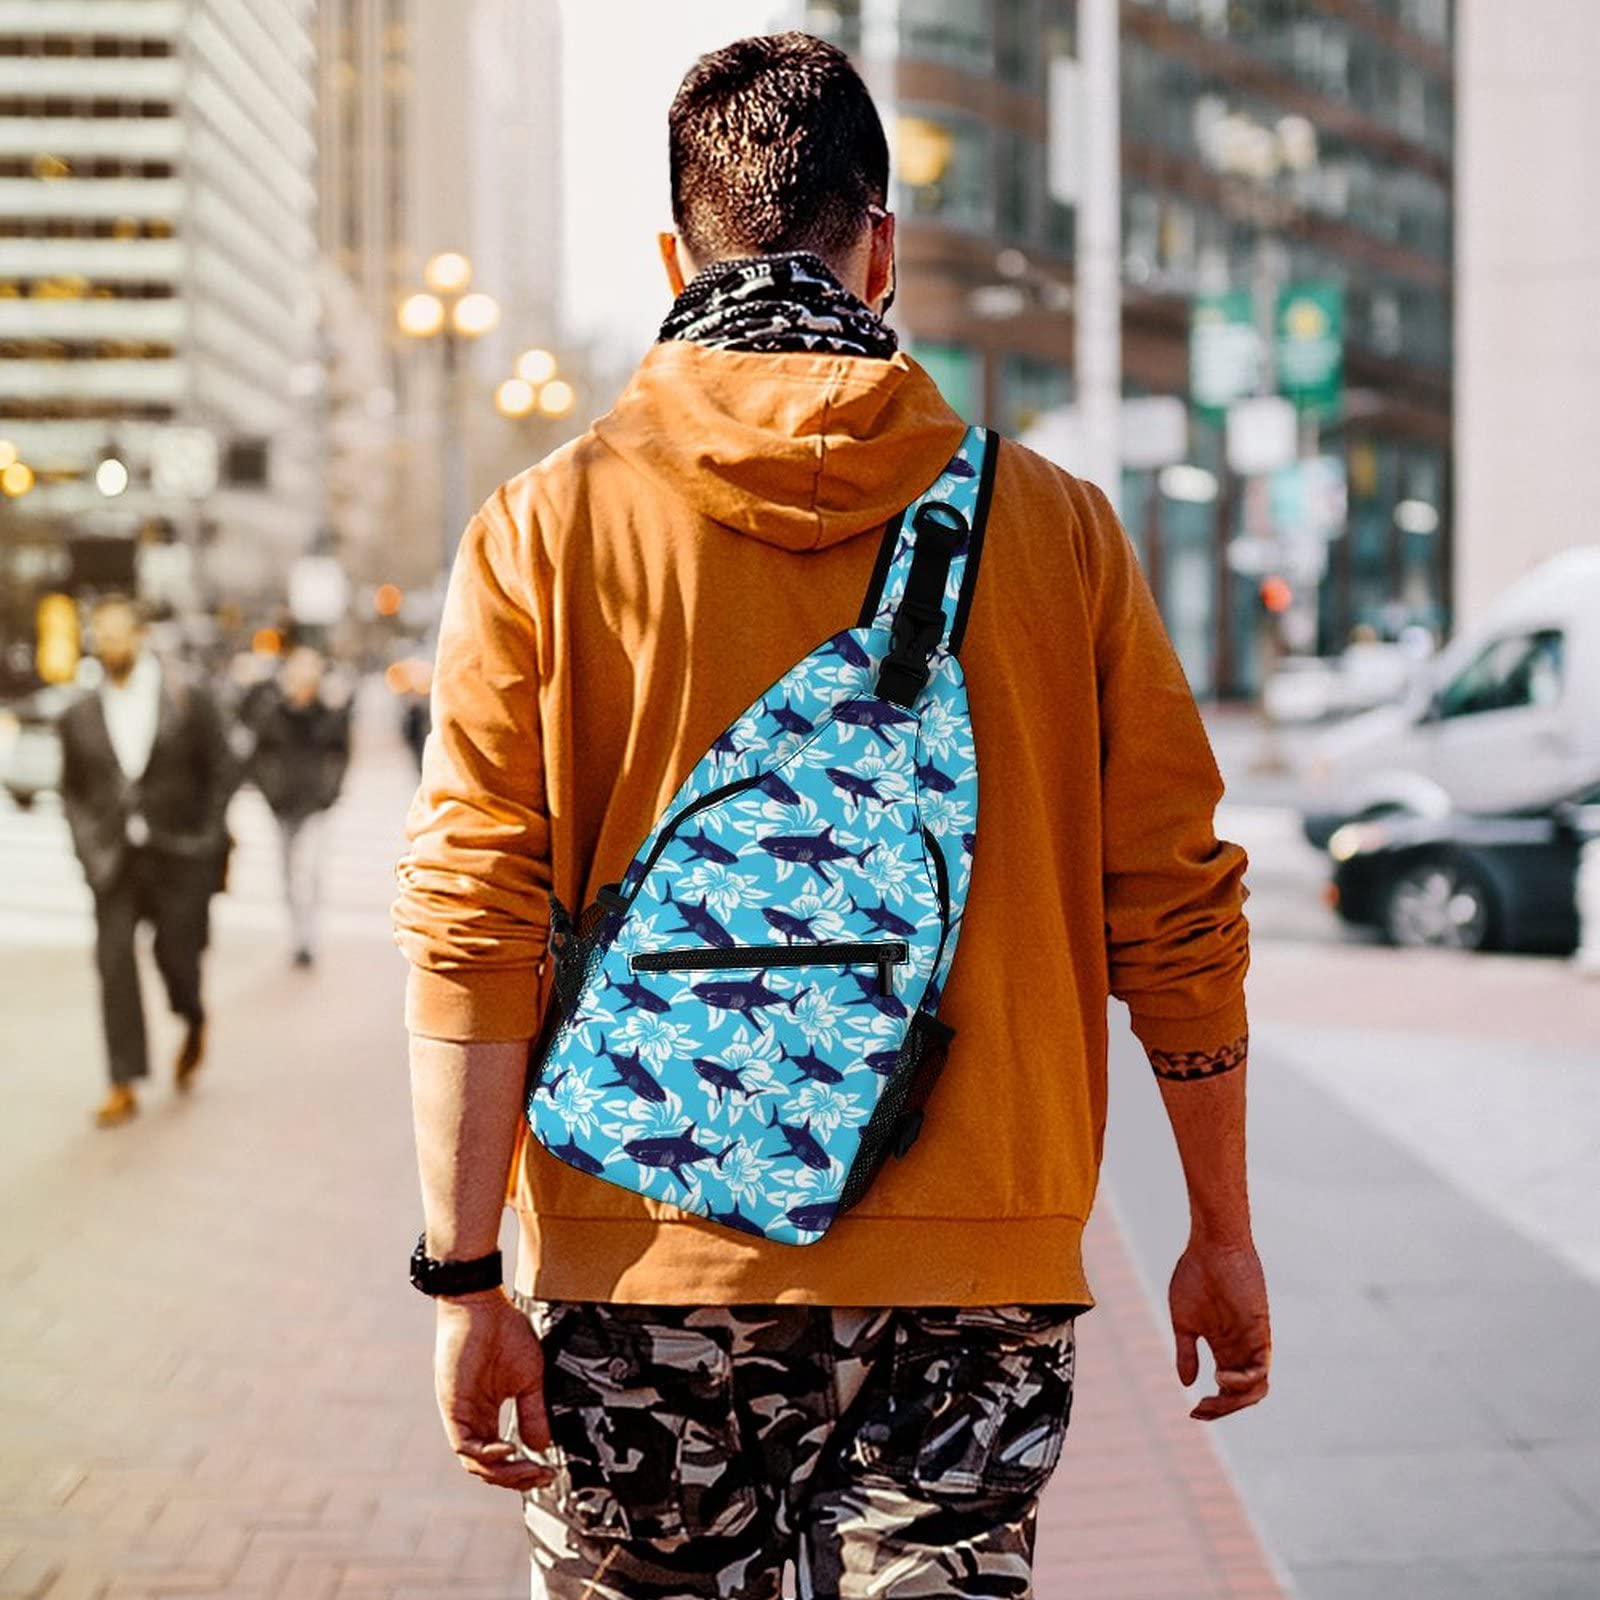 VSOFMY Sling Bag for Men Women Crossbody Sling Backpack for Travel Hiking Daypack Chest Bag Shark